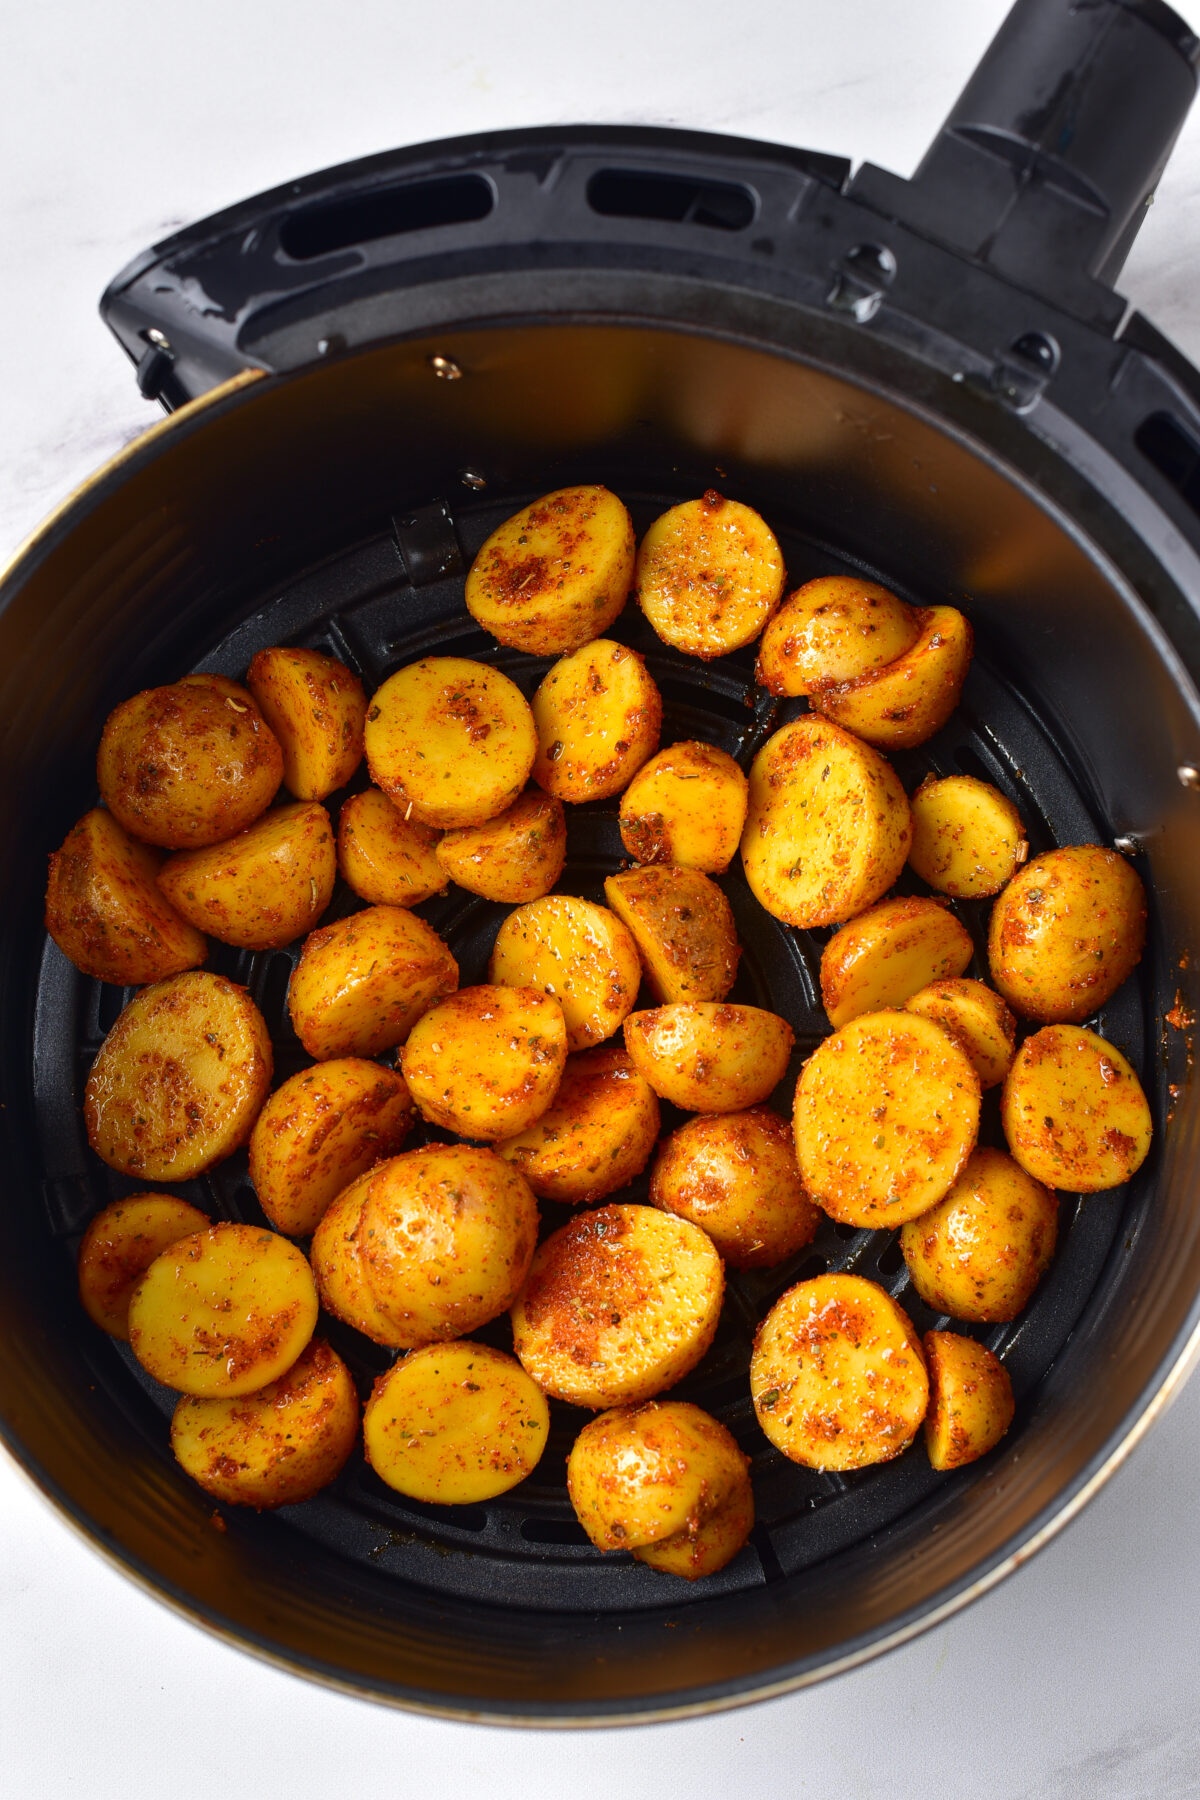 Seasoned baby potatoes in the air fryer basket.